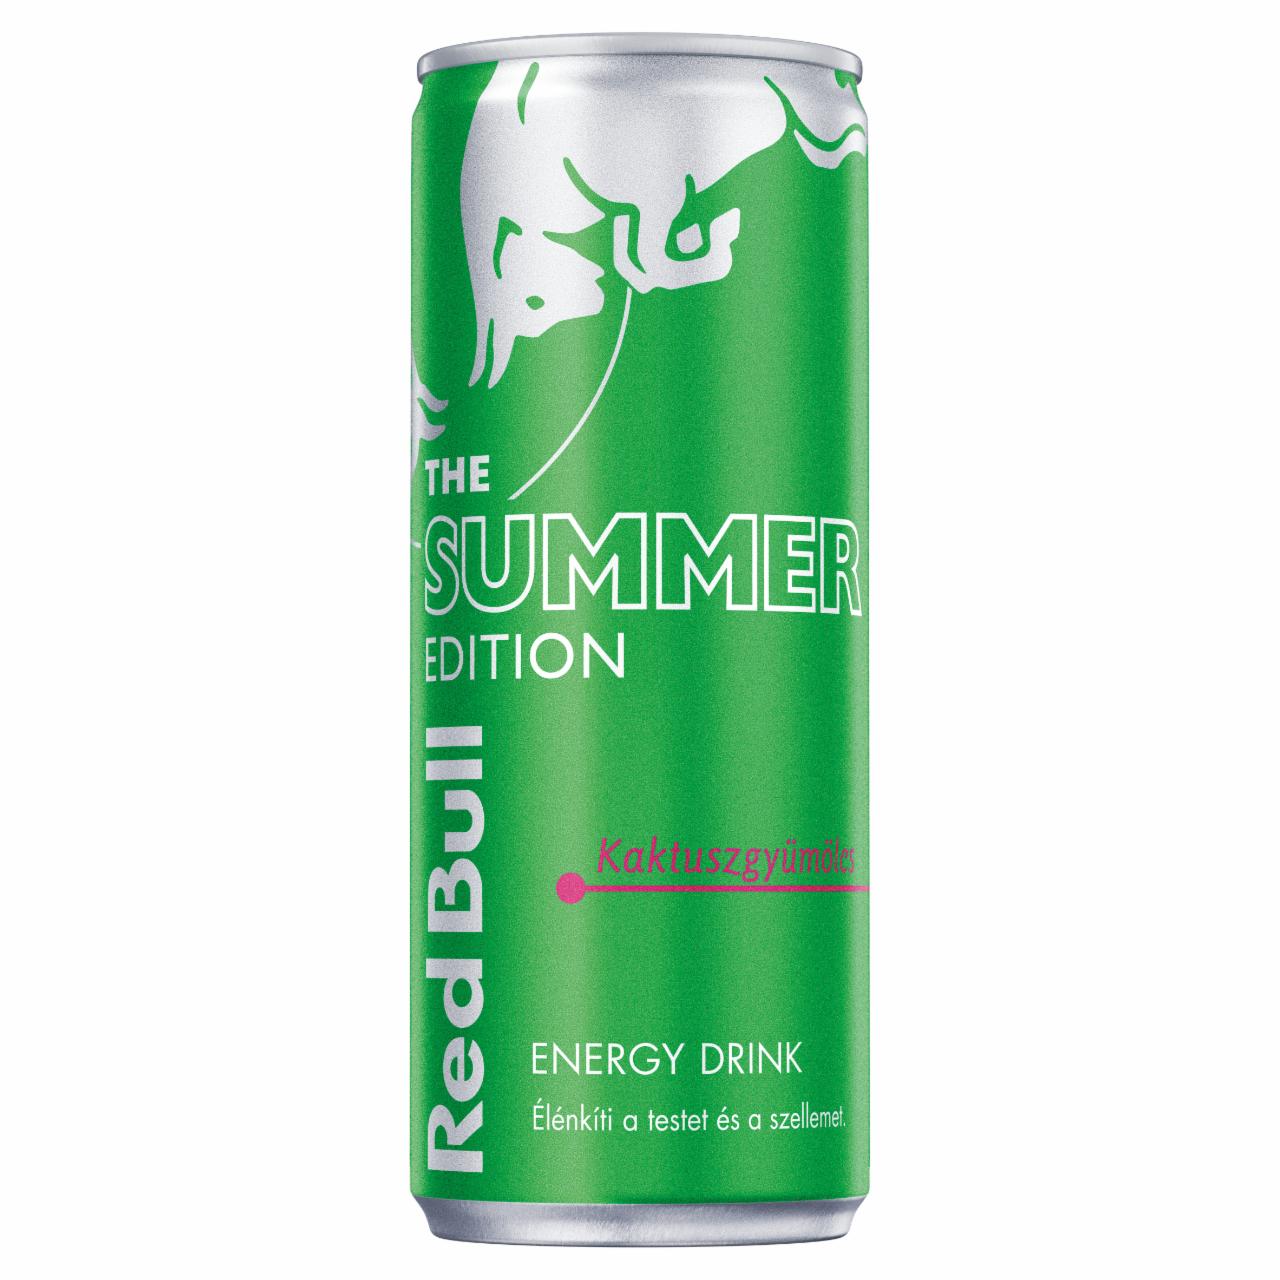 Képek - Red Bull The Summer Edition energiaital kaktuszgyümölcs ízesítéssel 250 ml 